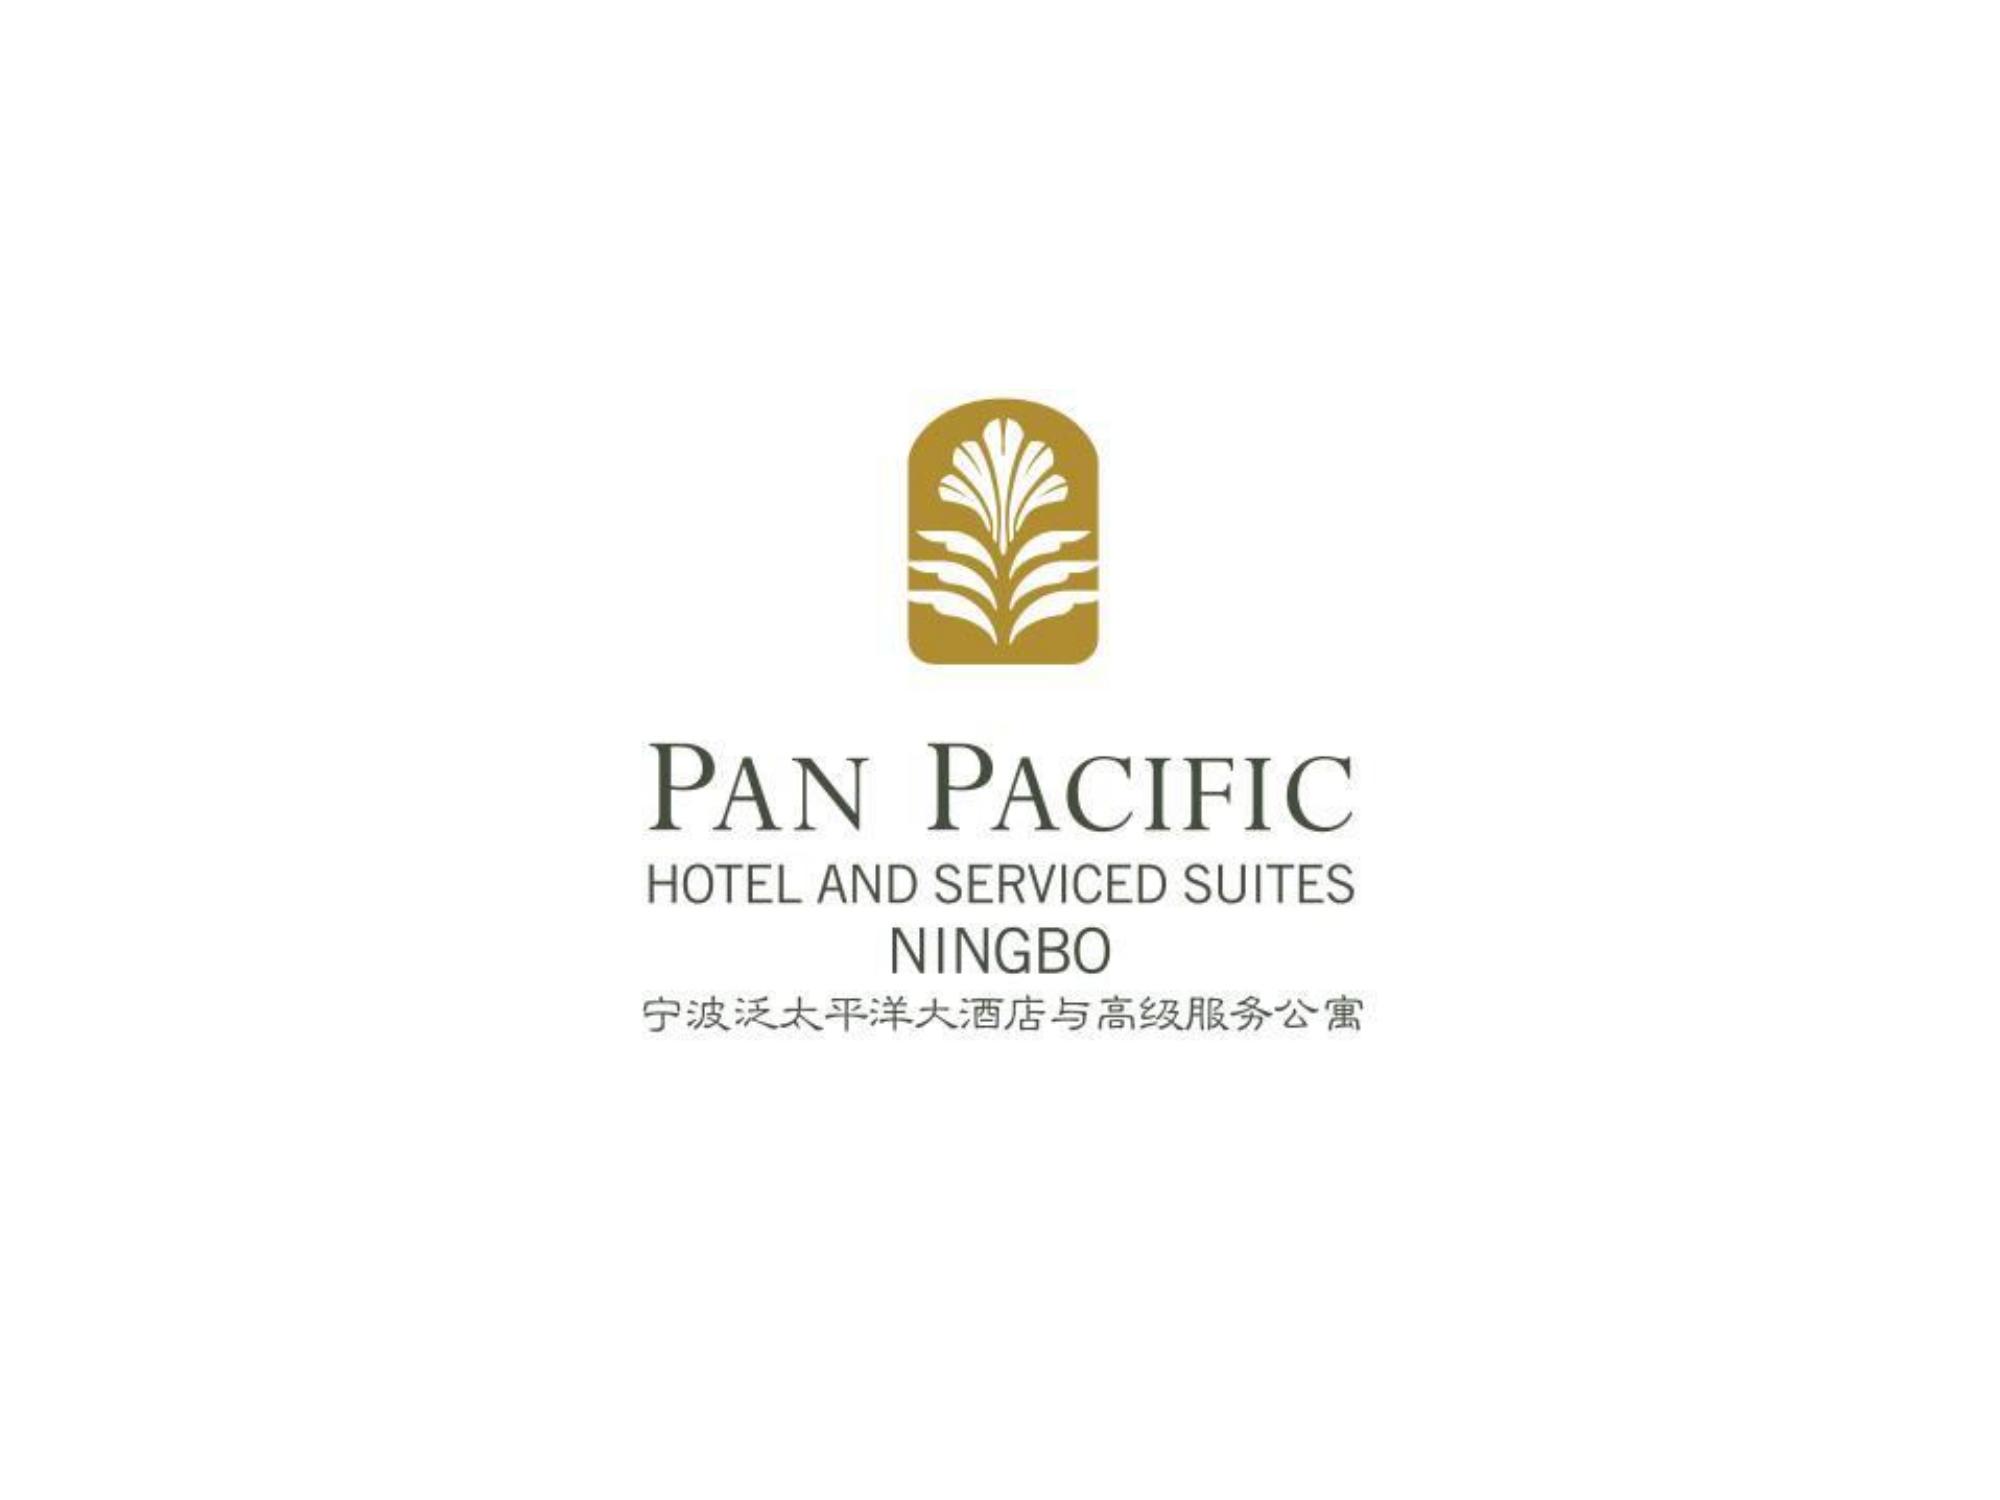 1_宁波泛太平洋大酒店与高级服务公寓信息展示+宁波热门景点20211223_00.jpg